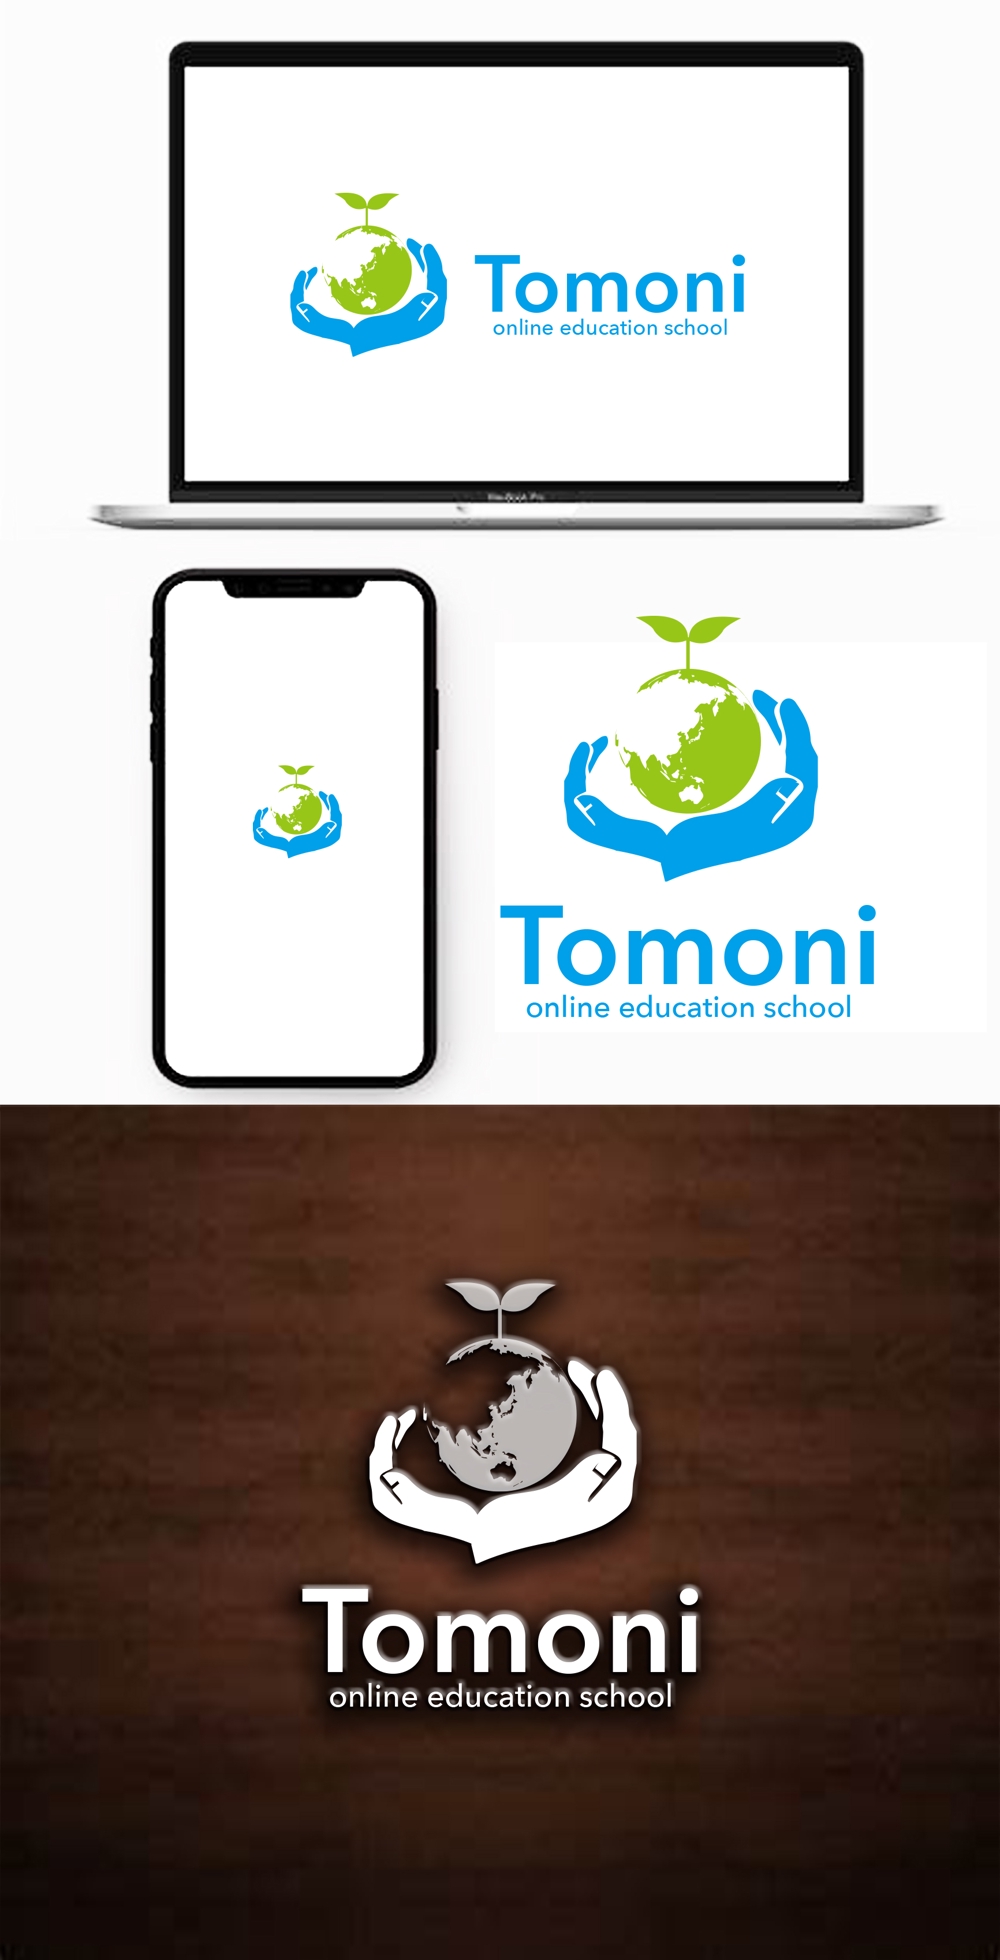 オンライン教育スクール「Tomoni」のロゴ